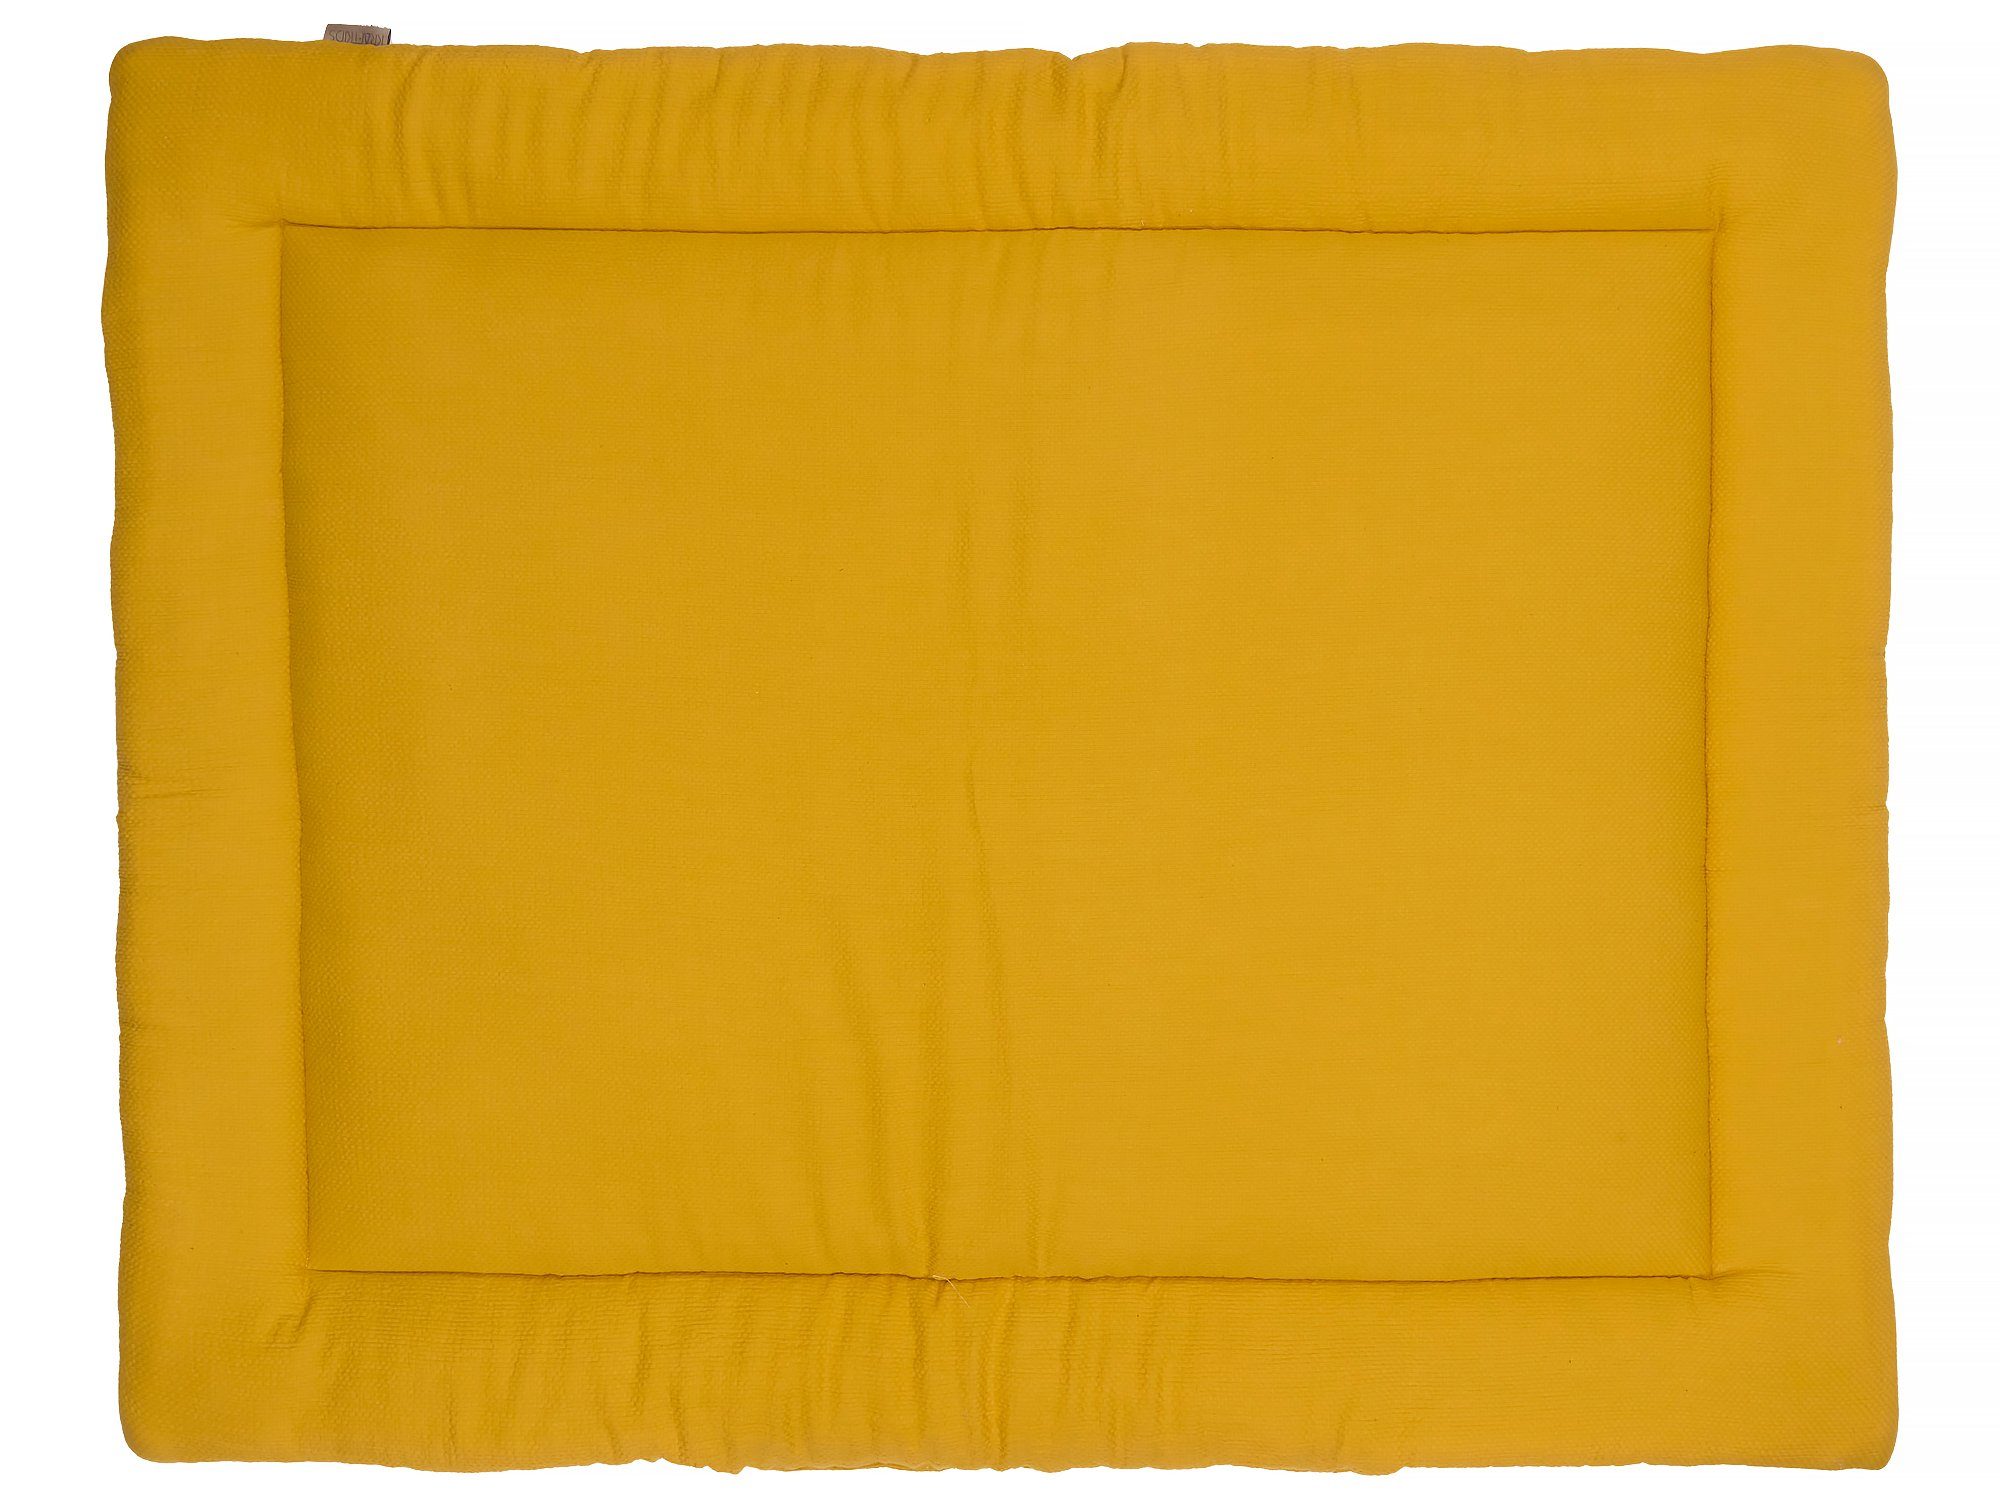 Krabbeldecke Doppelkrepp Gelb Mustard, 130 Außen Baumwolle, 130 cm KraftKids, x dicke Vlies, Innen 100% Füllung aus kuschelige